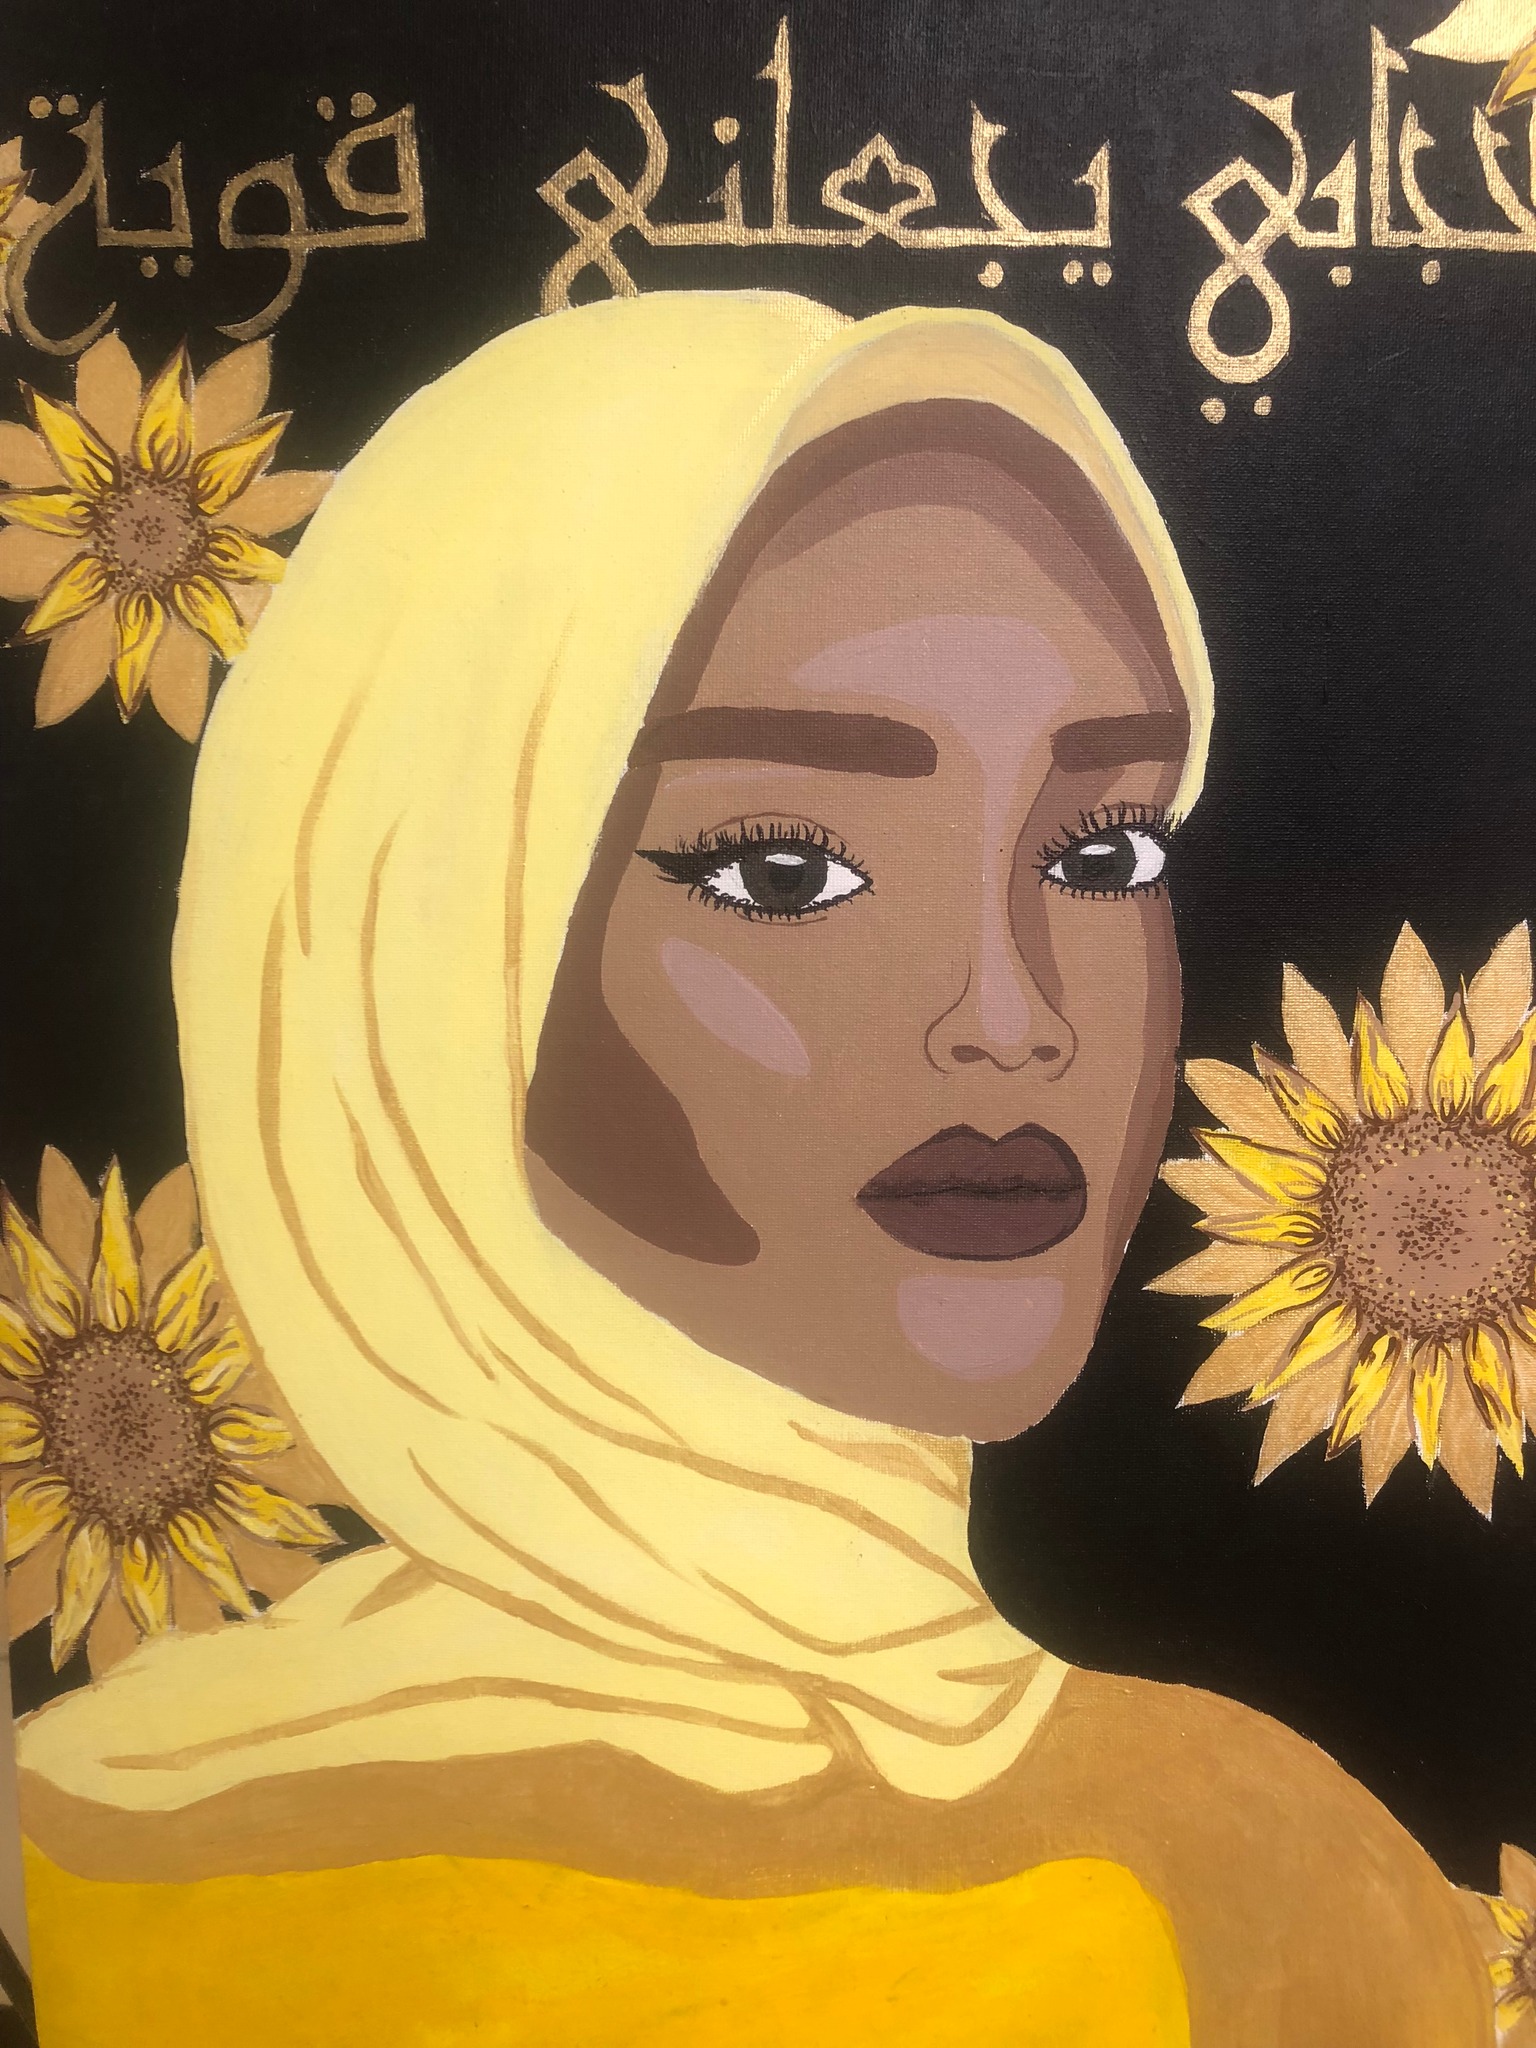 لوحة “حجابي يجعلني قوية" (التواصل الاجتماعي)